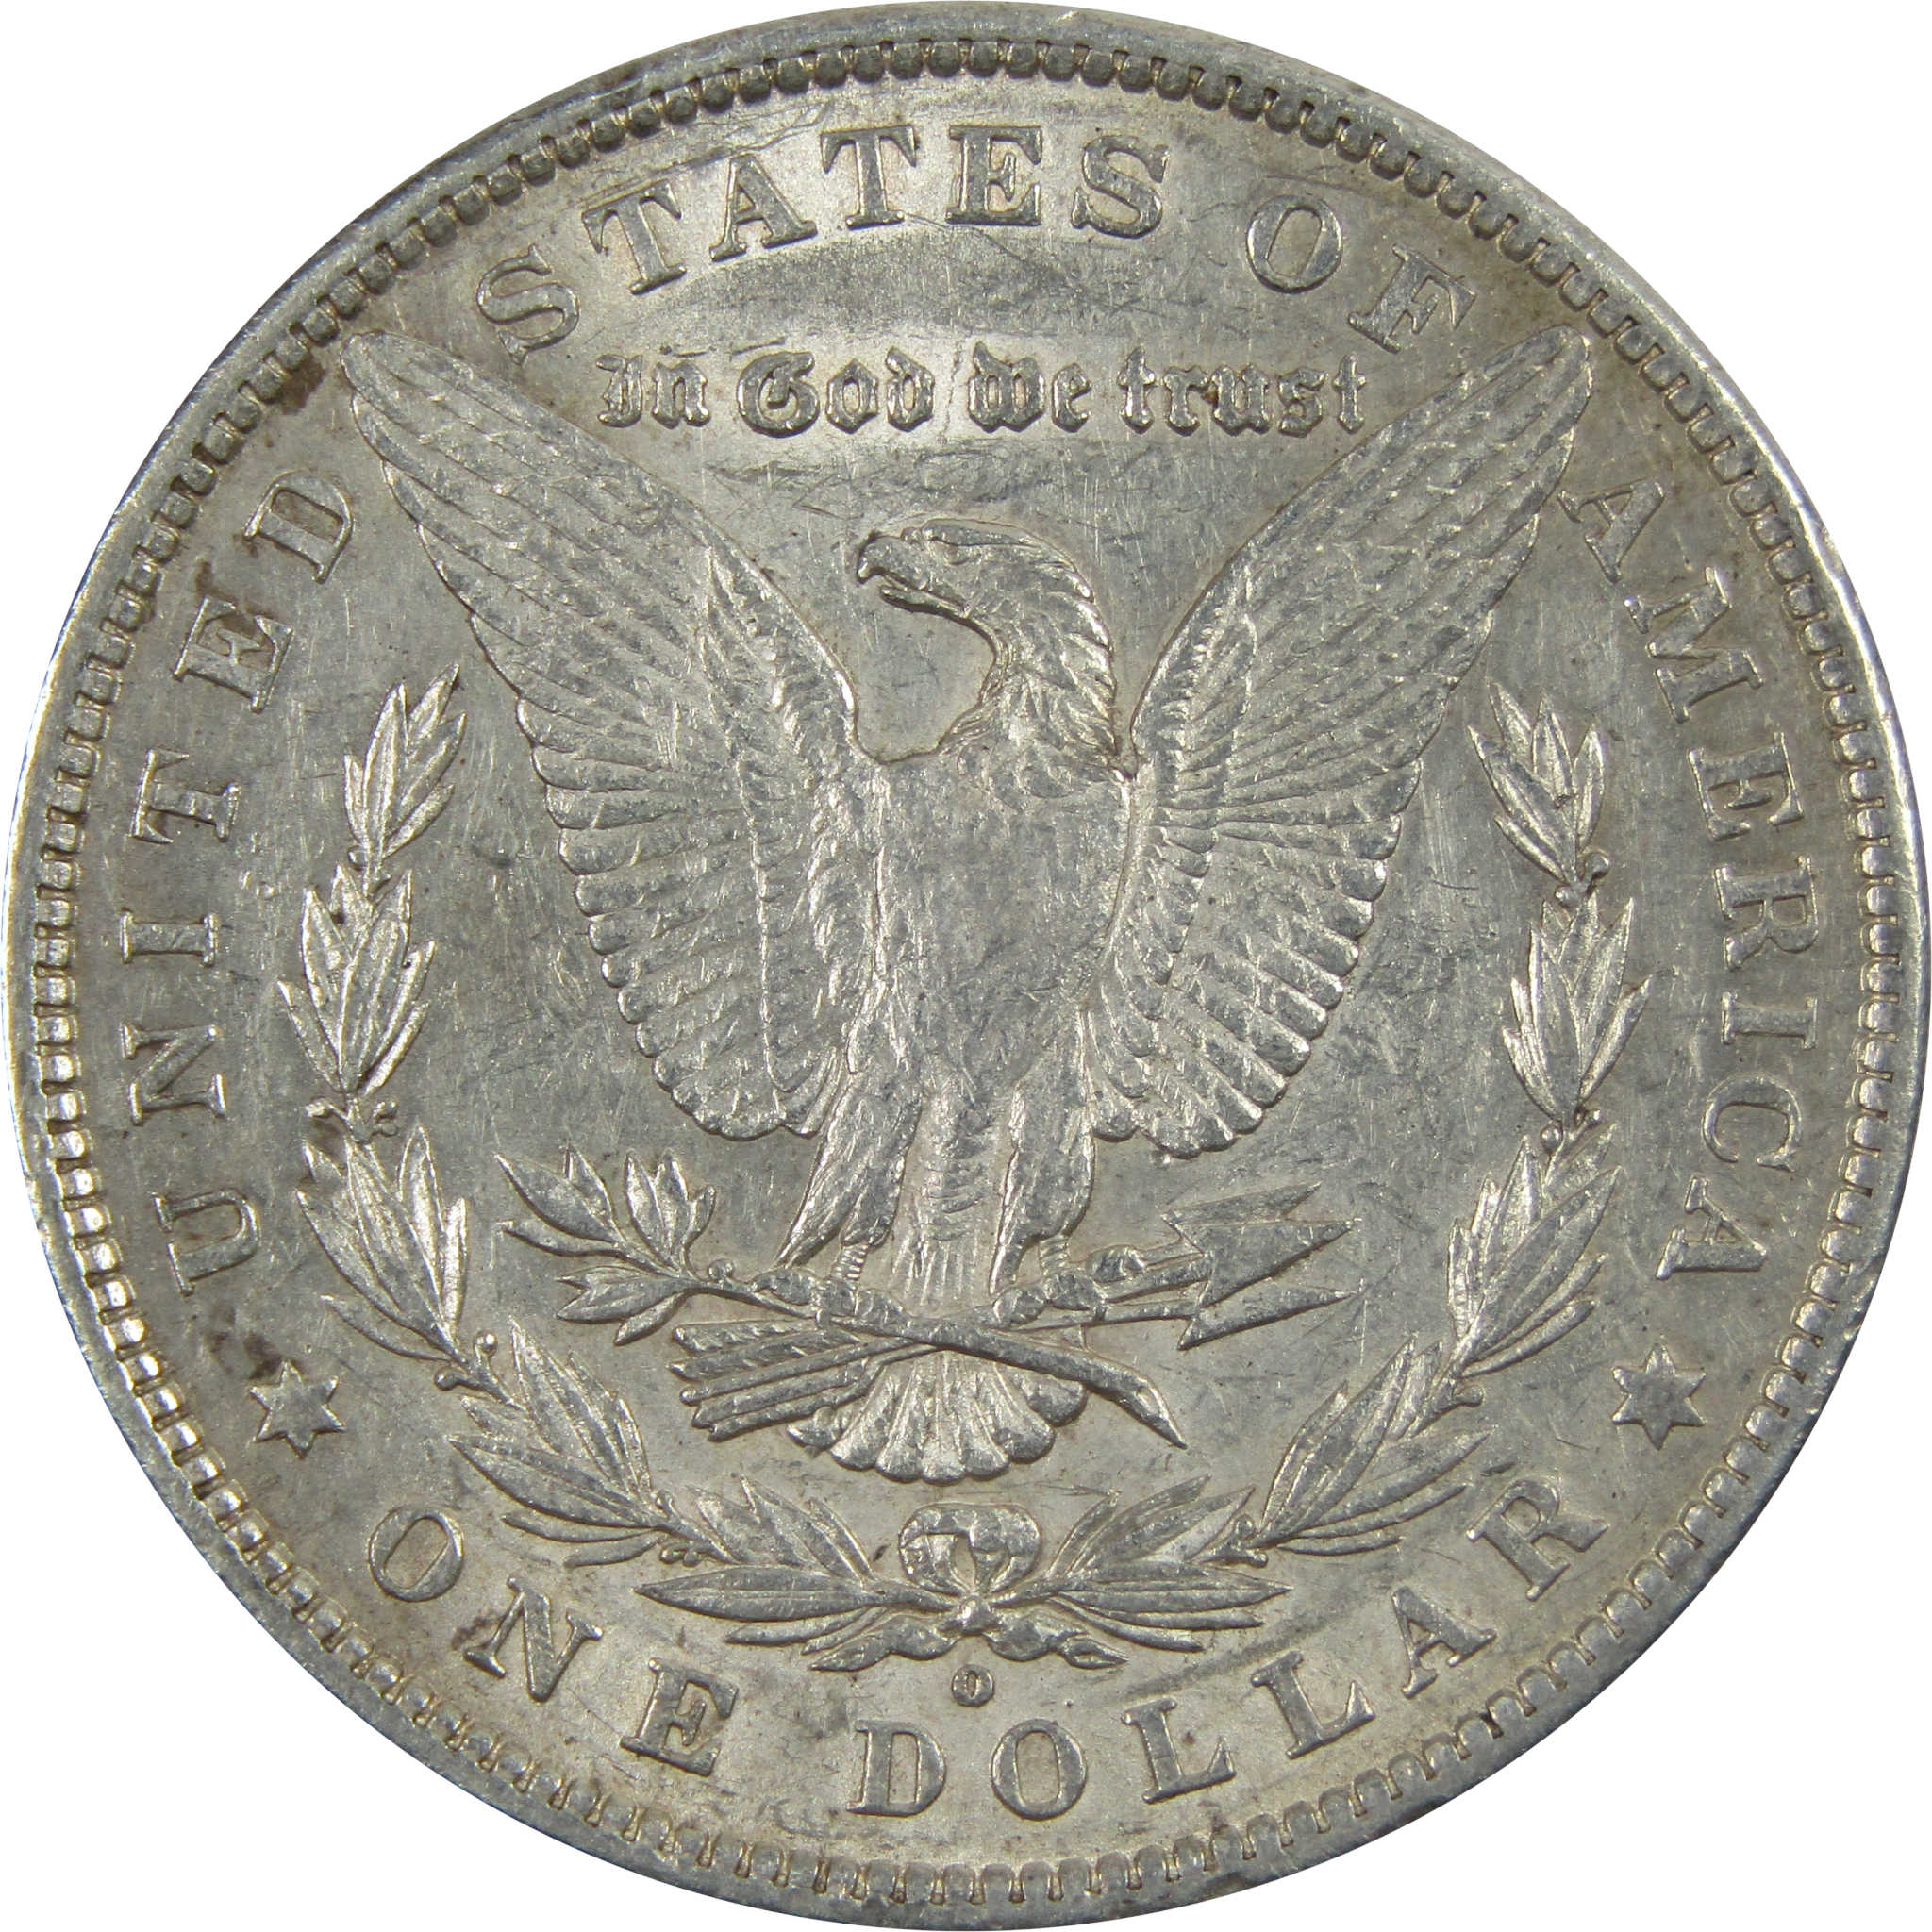 1880 O Ear Hangnail Morgan Dollar XF EF 90% Silver SKU:I7145 - Morgan coin - Morgan silver dollar - Morgan silver dollar for sale - Profile Coins &amp; Collectibles